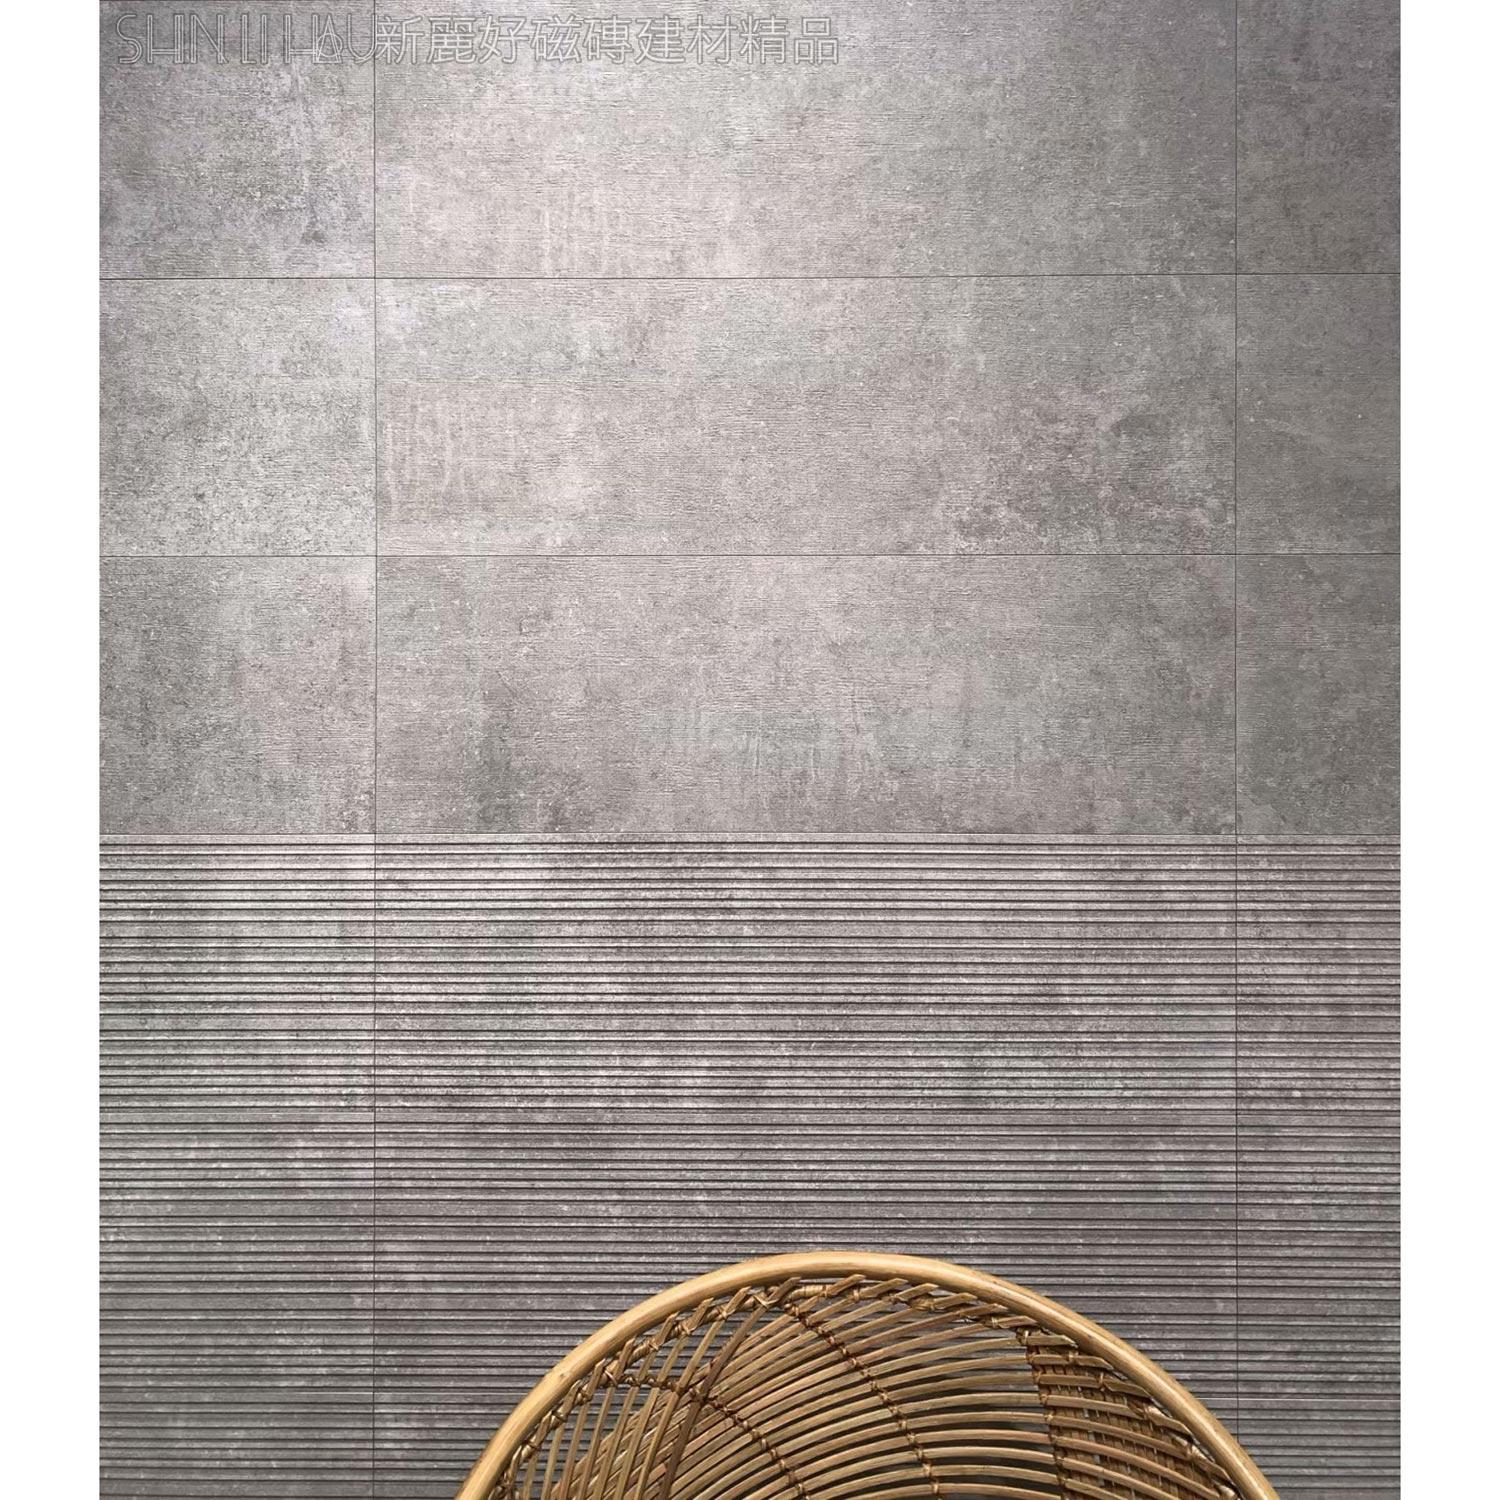 板岩壁磚-洛斯特-淺灰、淺灰花詳樣式圖